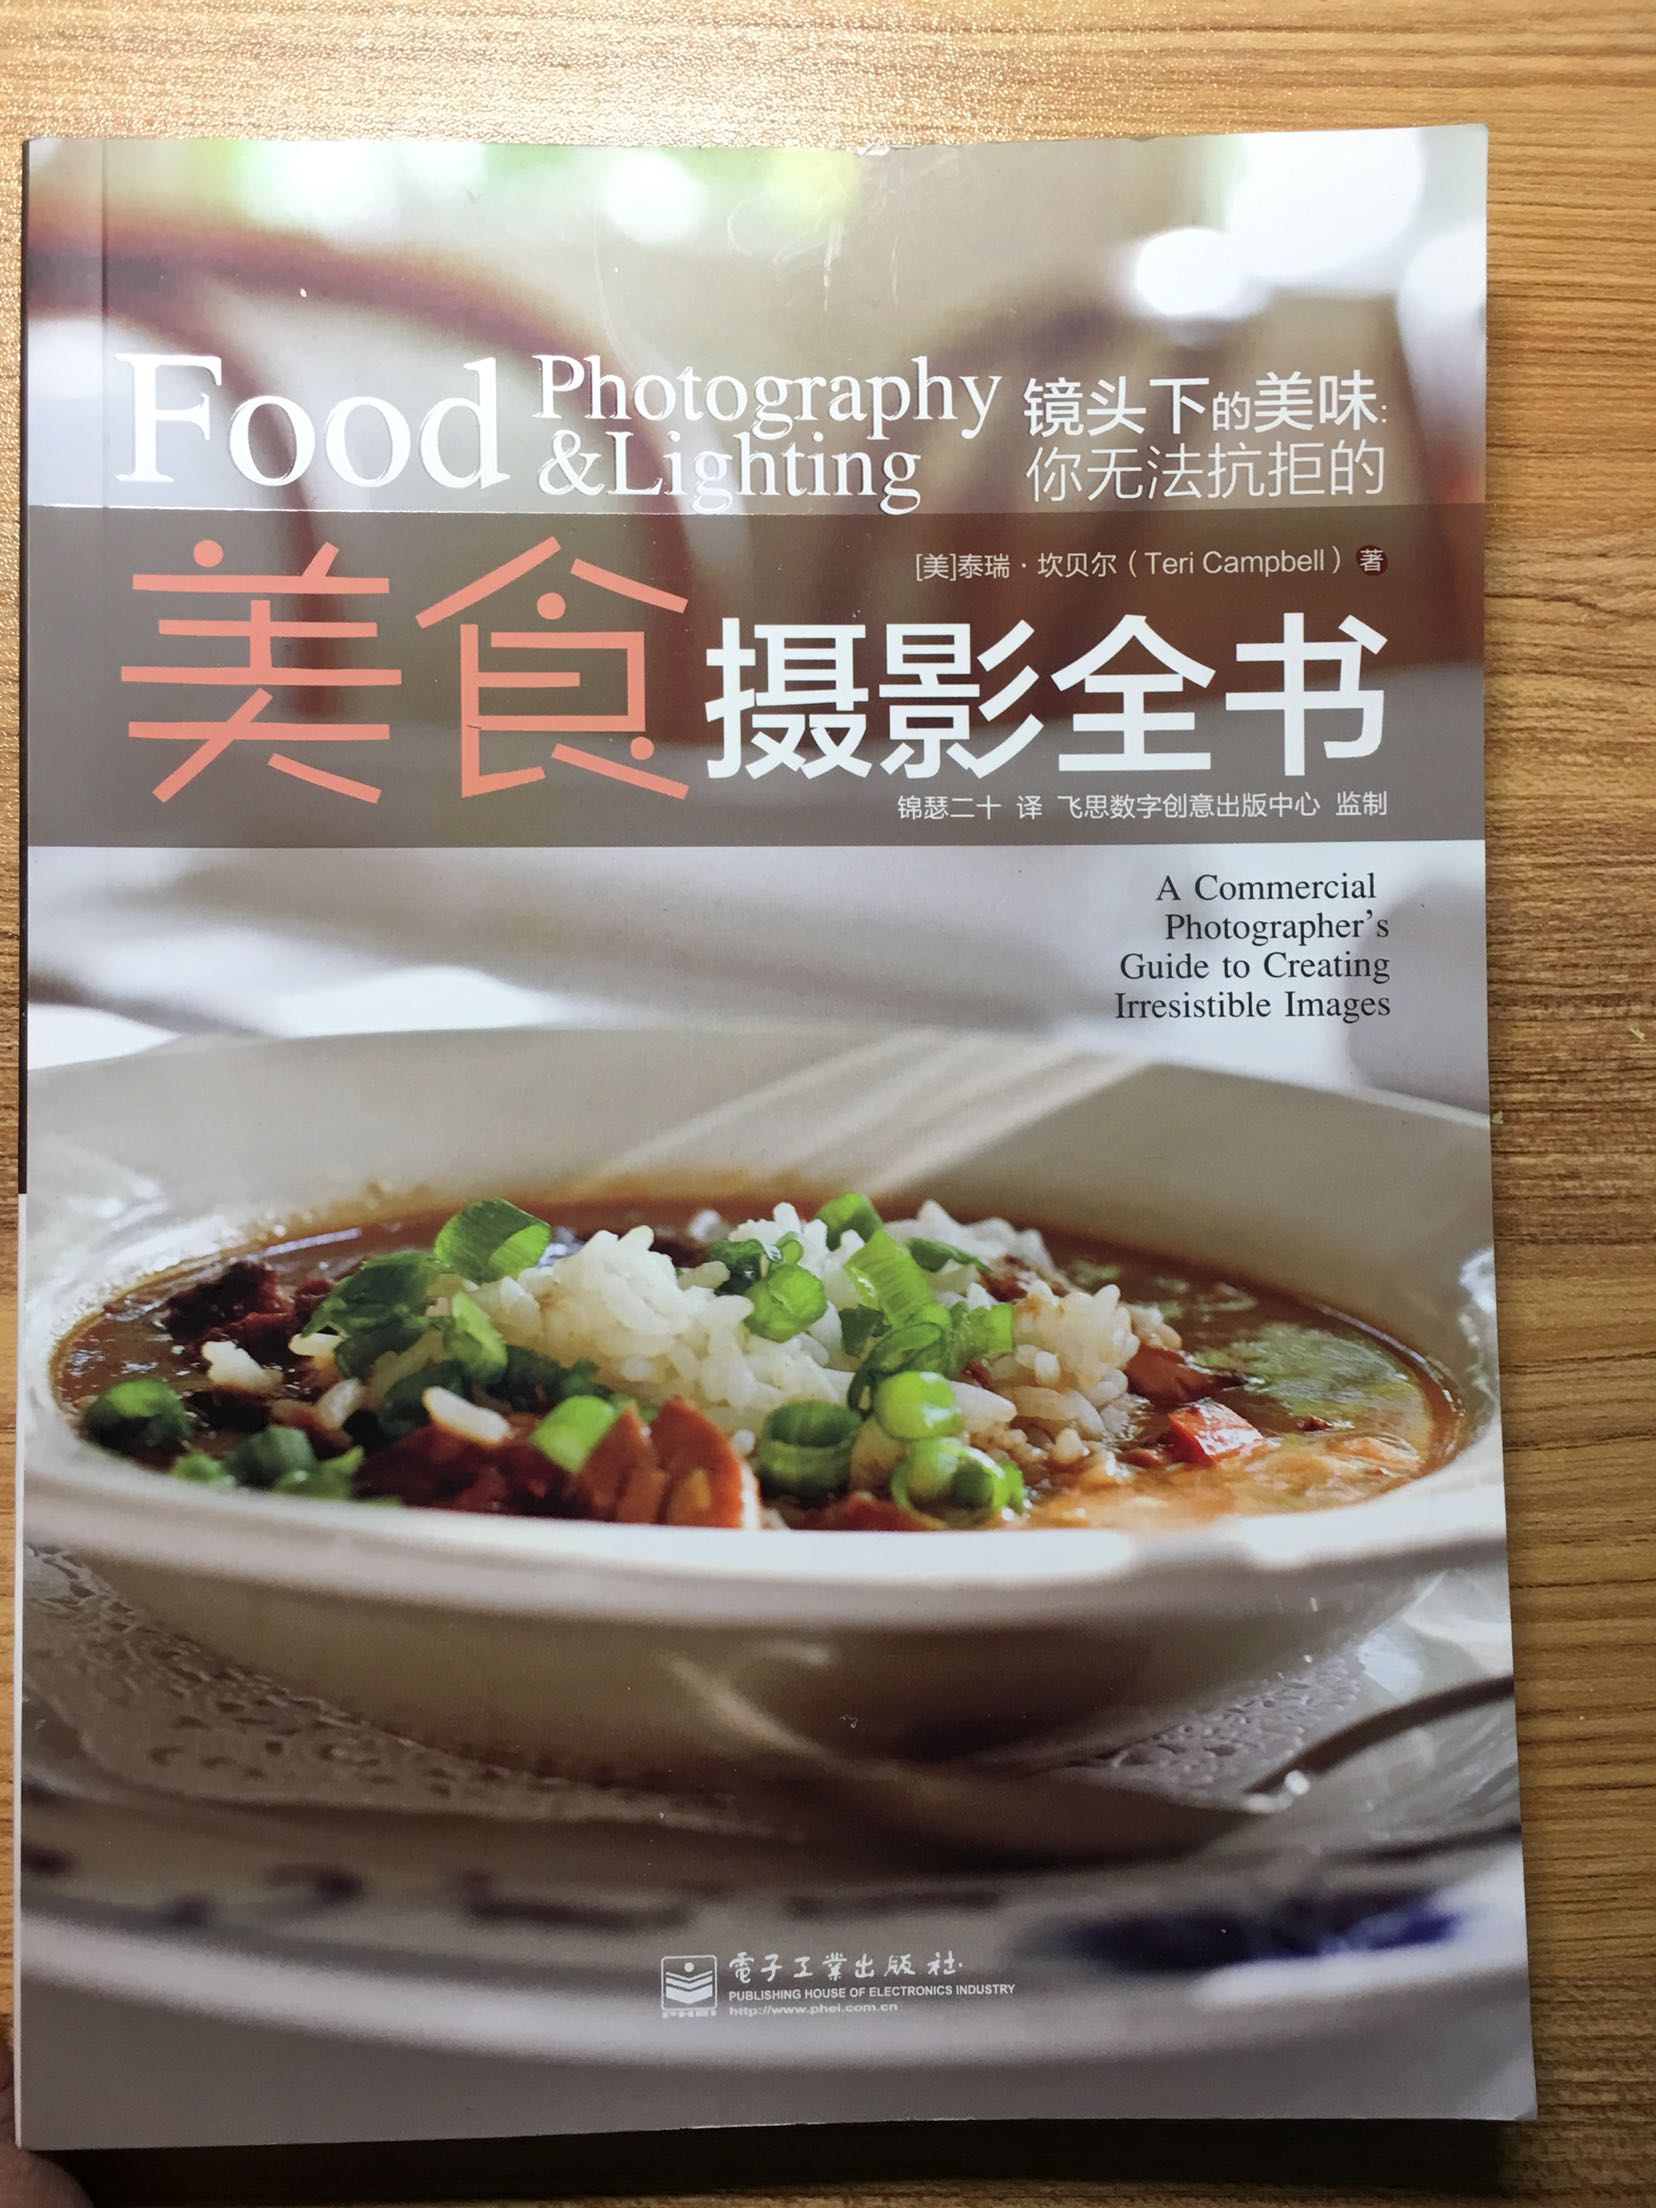 美食摄影方面非常值得读的一本书，作为一个吃货来说，拍照是必须的